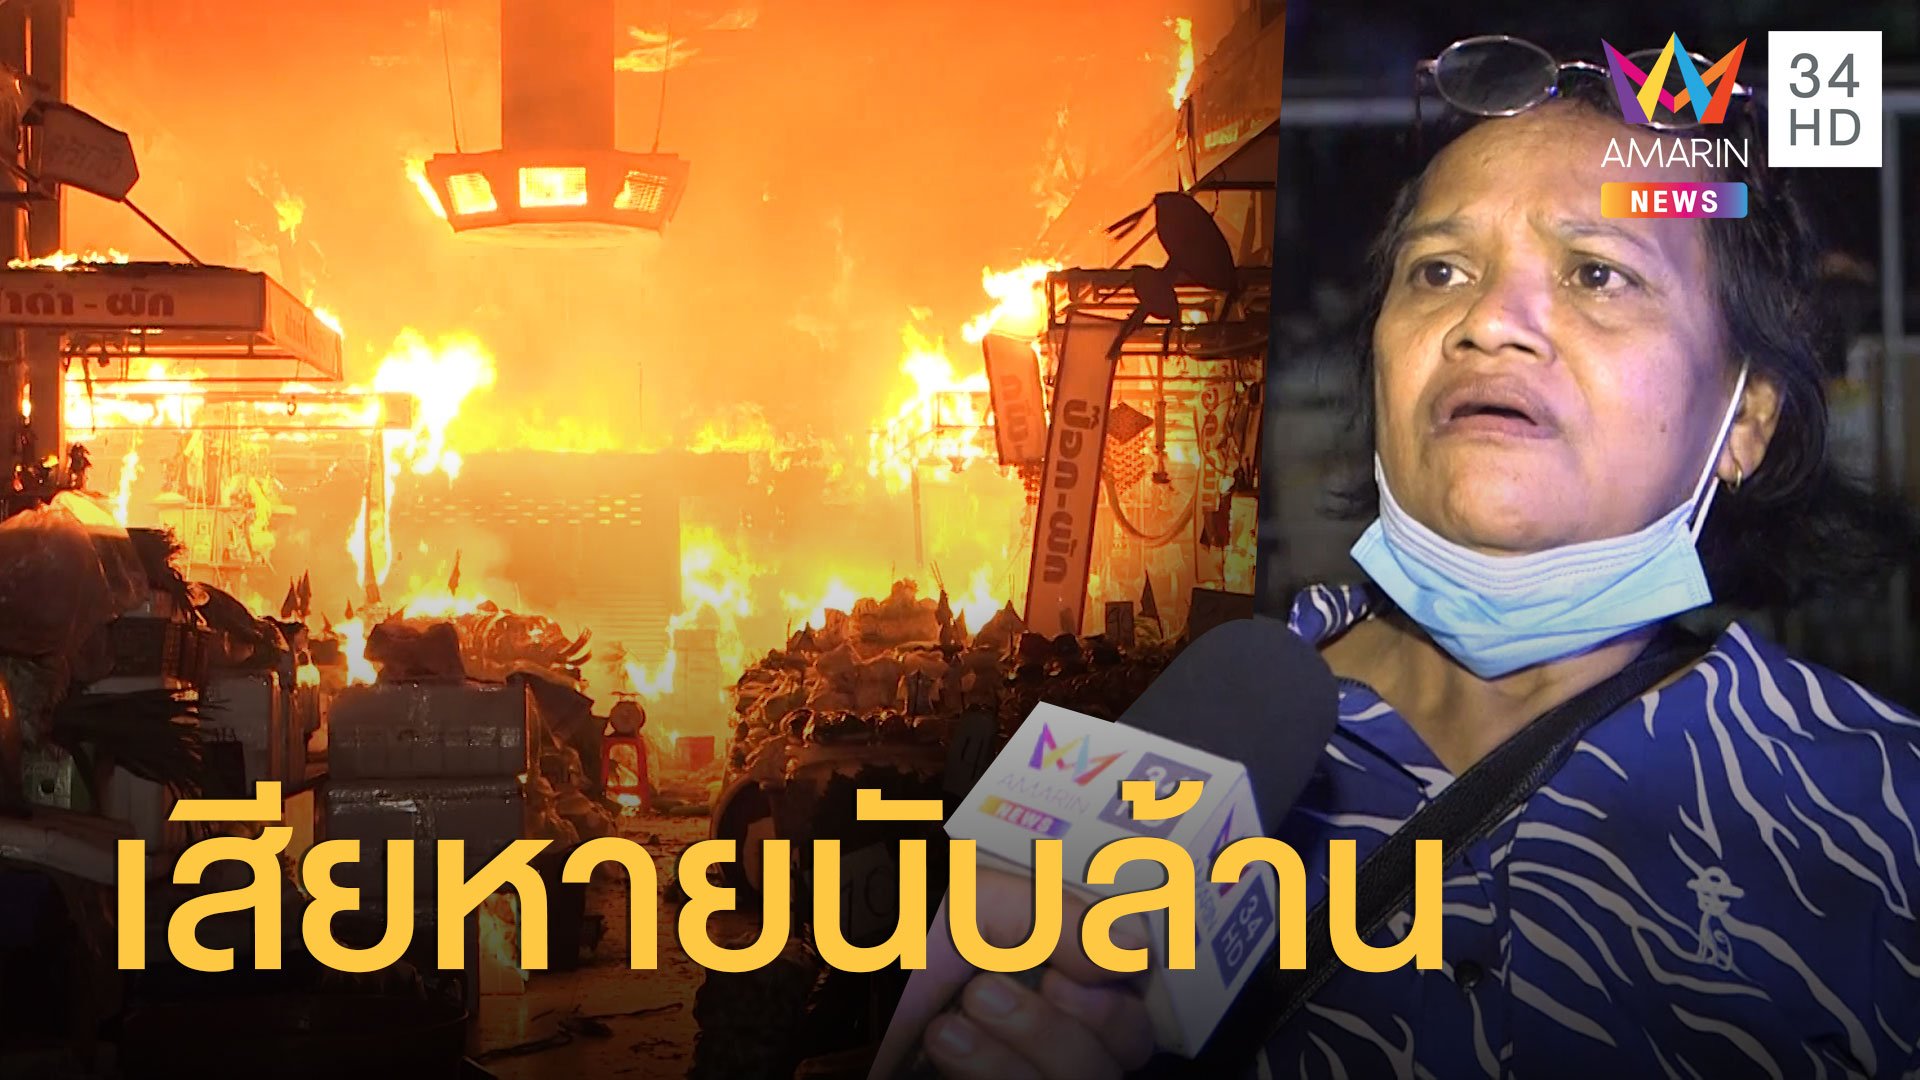 ไฟไหม้ตลาดยิ่งเจริญ วอด 50 แผง เสียหายนับล้าน | ข่าวเที่ยงอมรินทร์ | 2 ก.ค. 63 | AMARIN TVHD34